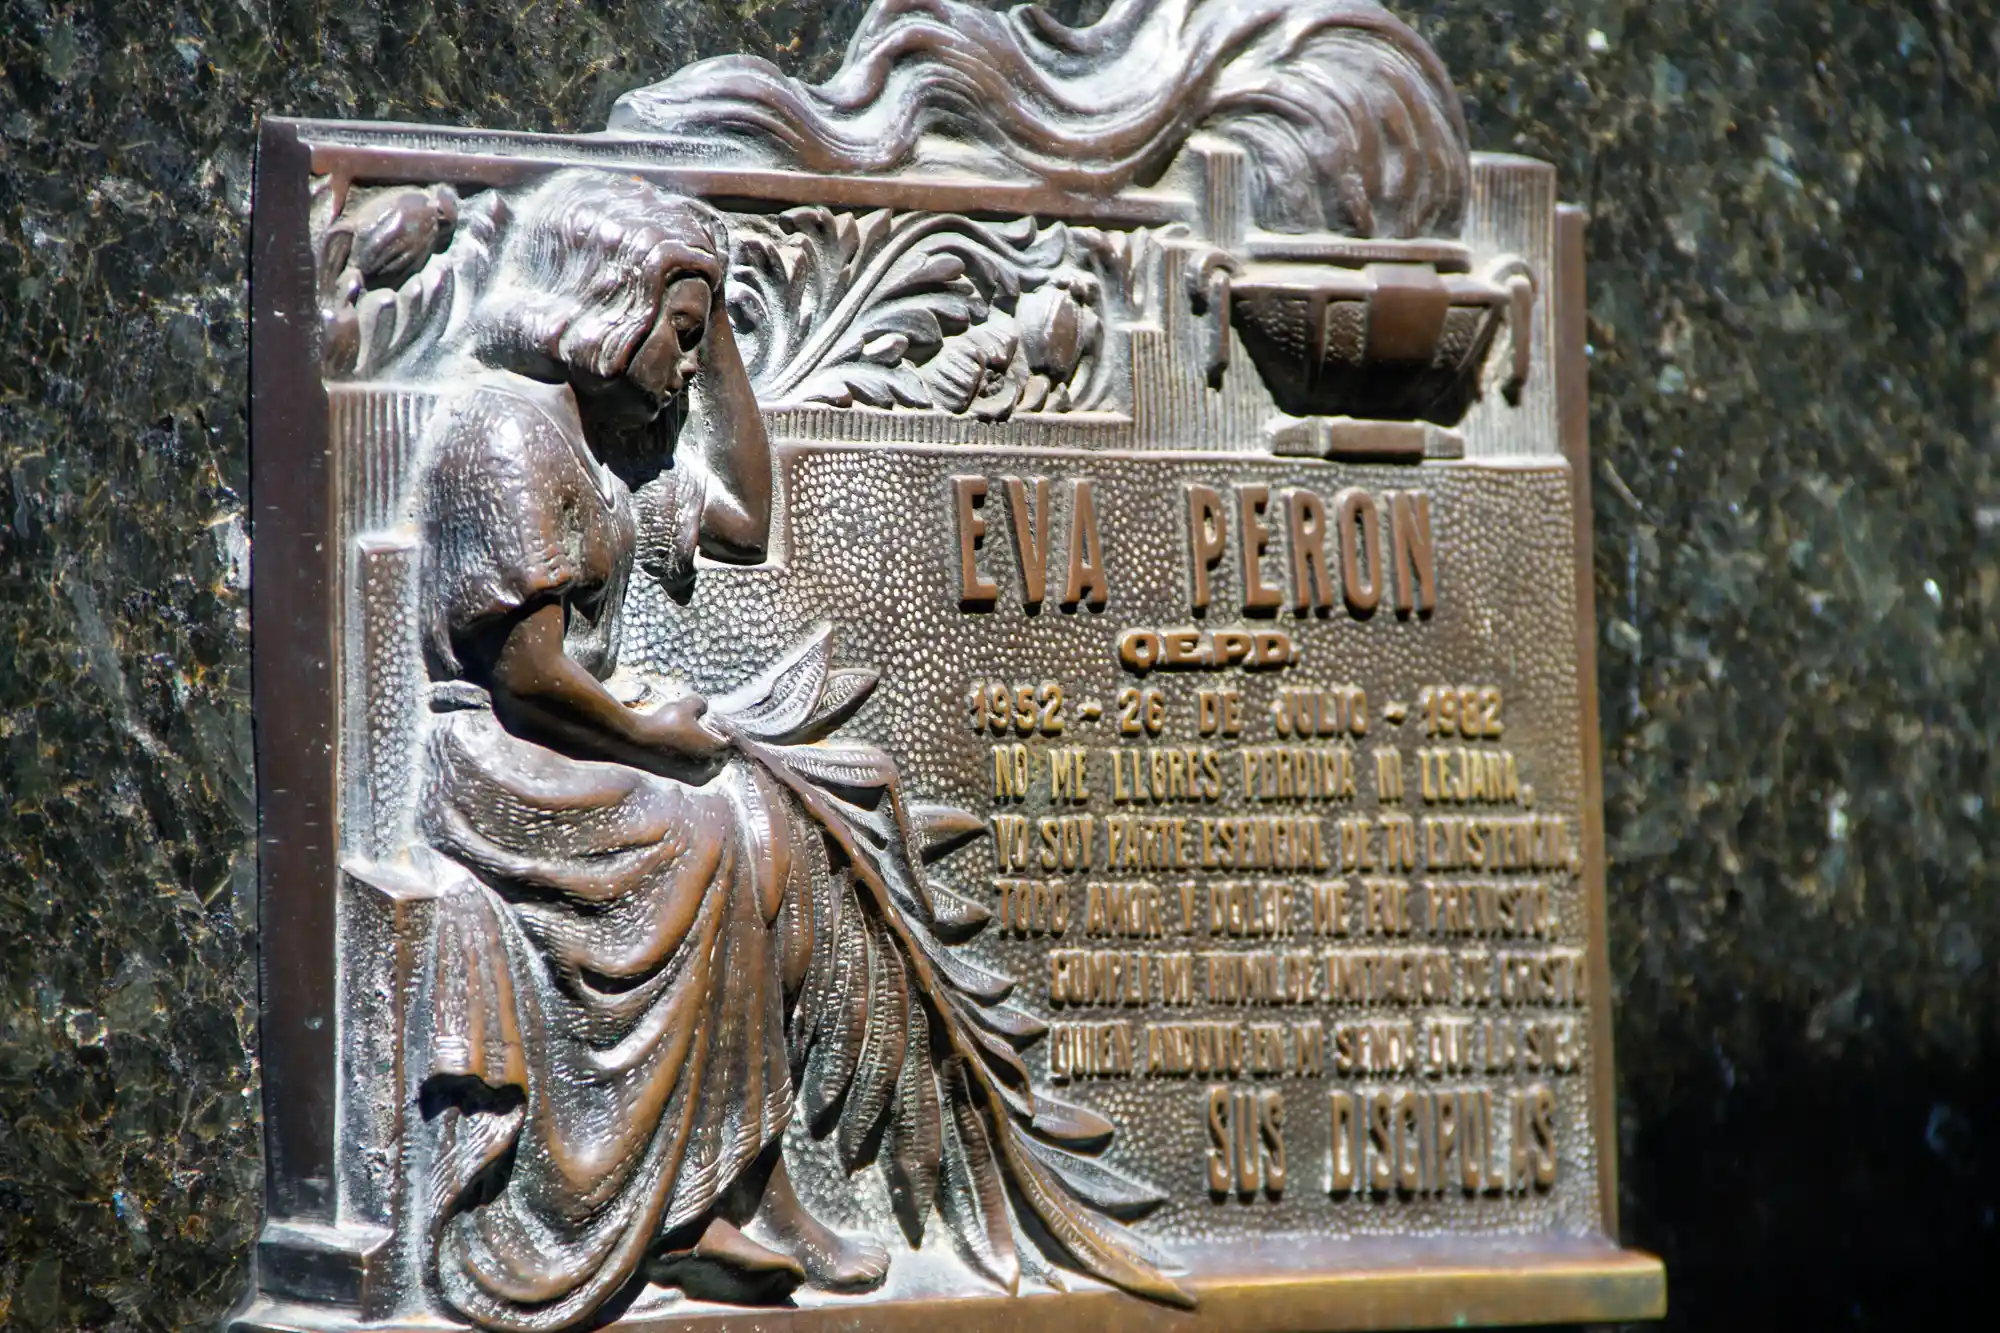 Eva Peron Grave Sign